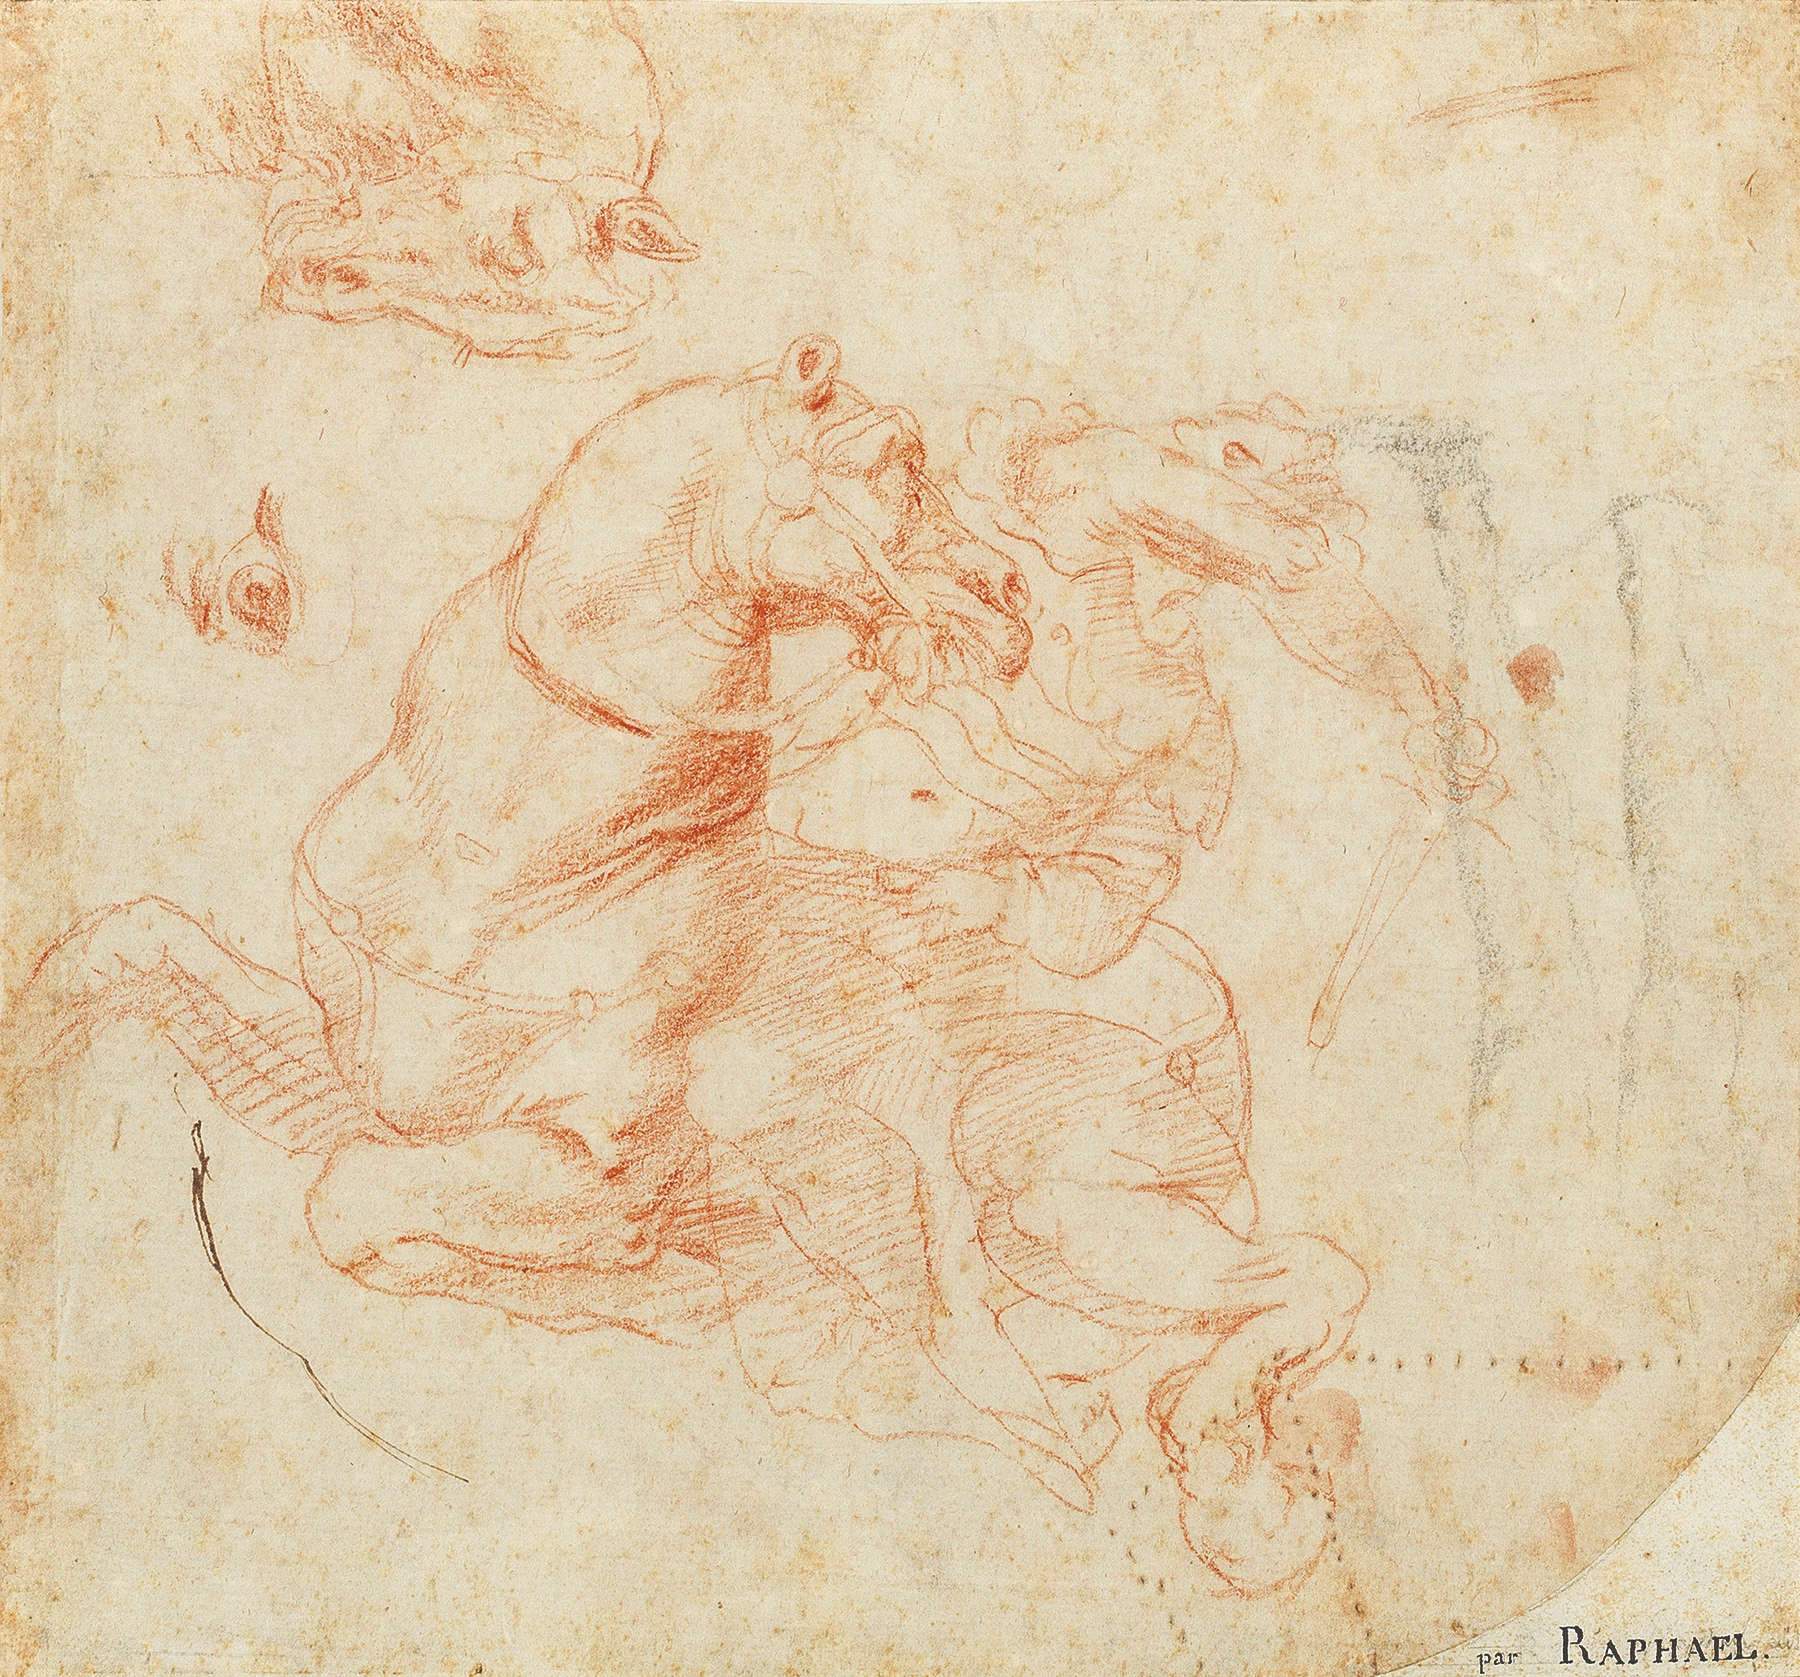 Découverte d'un dessin rare et précieux de Raphaël pour les Stanze du Vatican. Il sera mis aux enchères